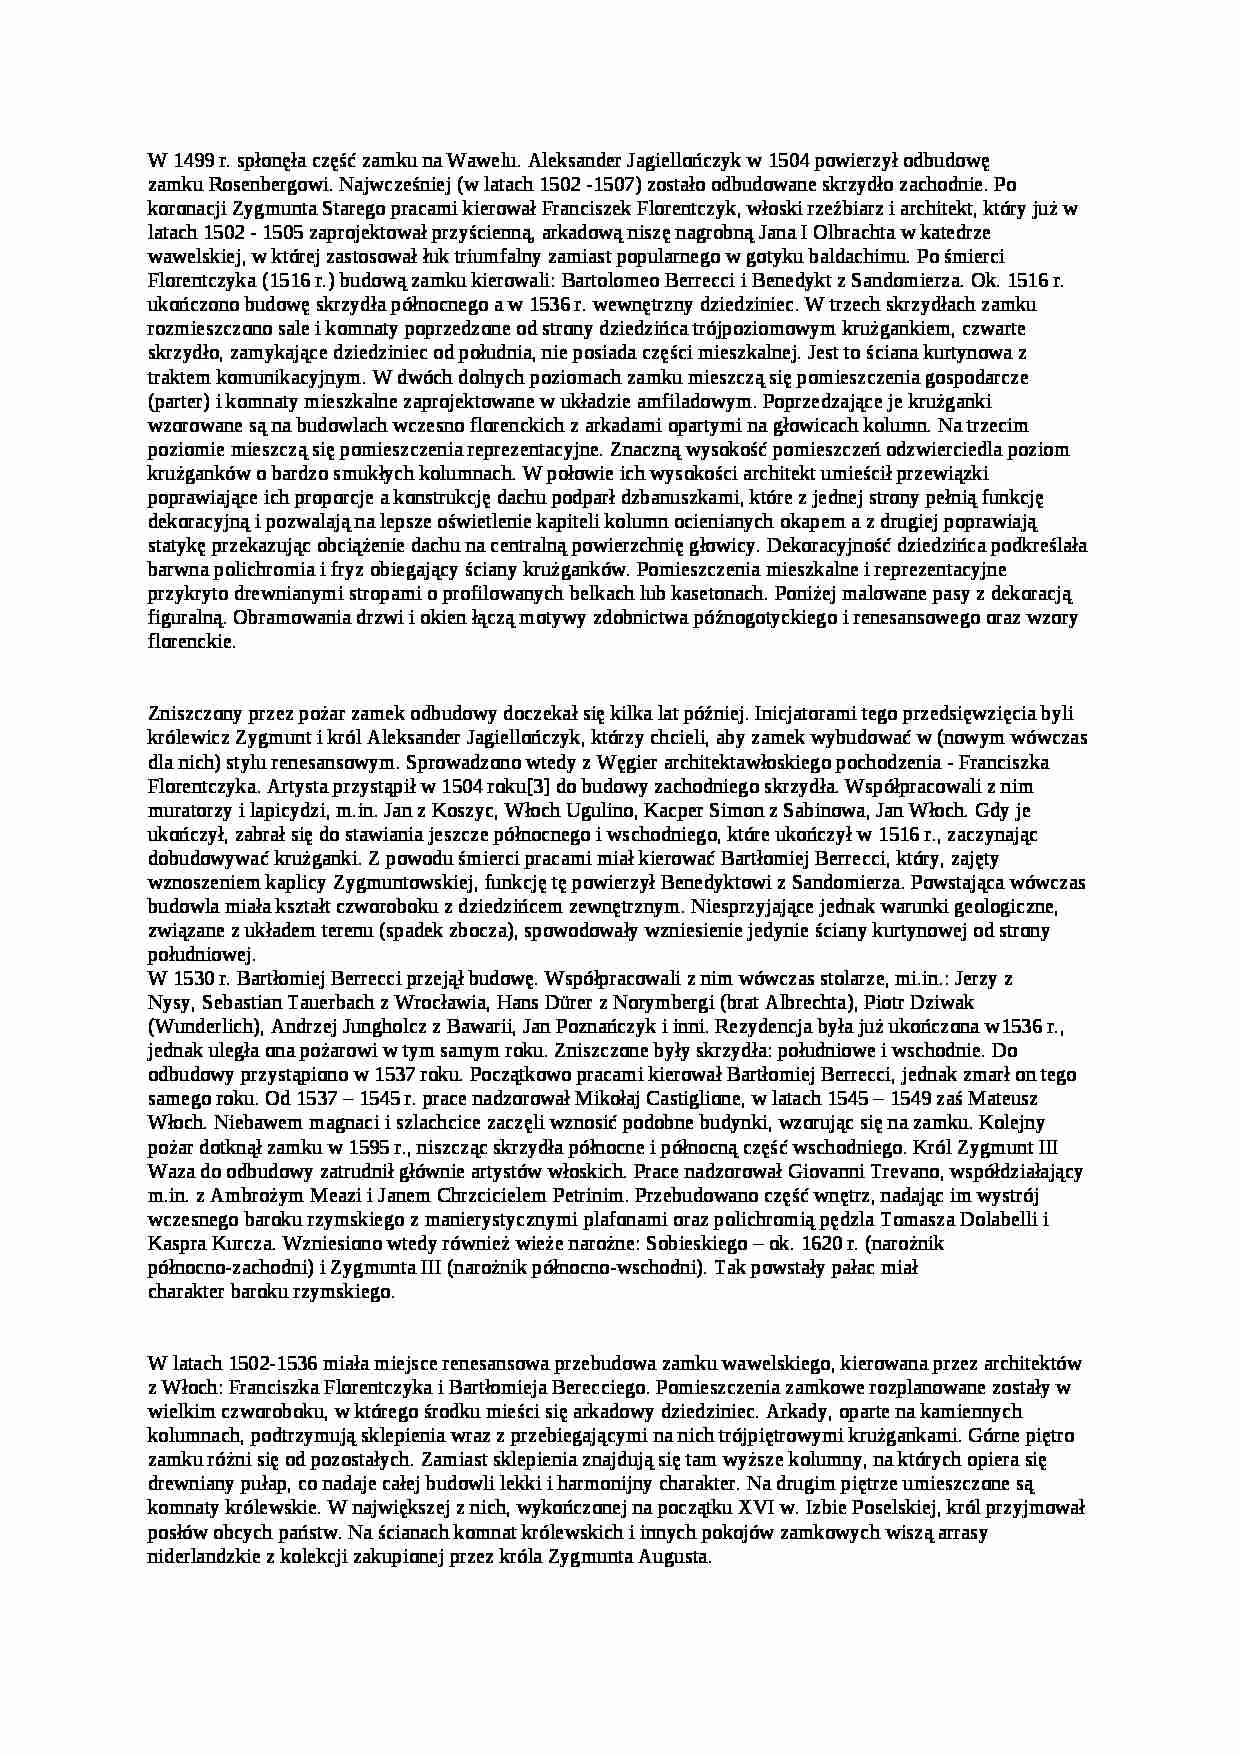 Renesansowa przebudowa wawelu - opis - strona 1